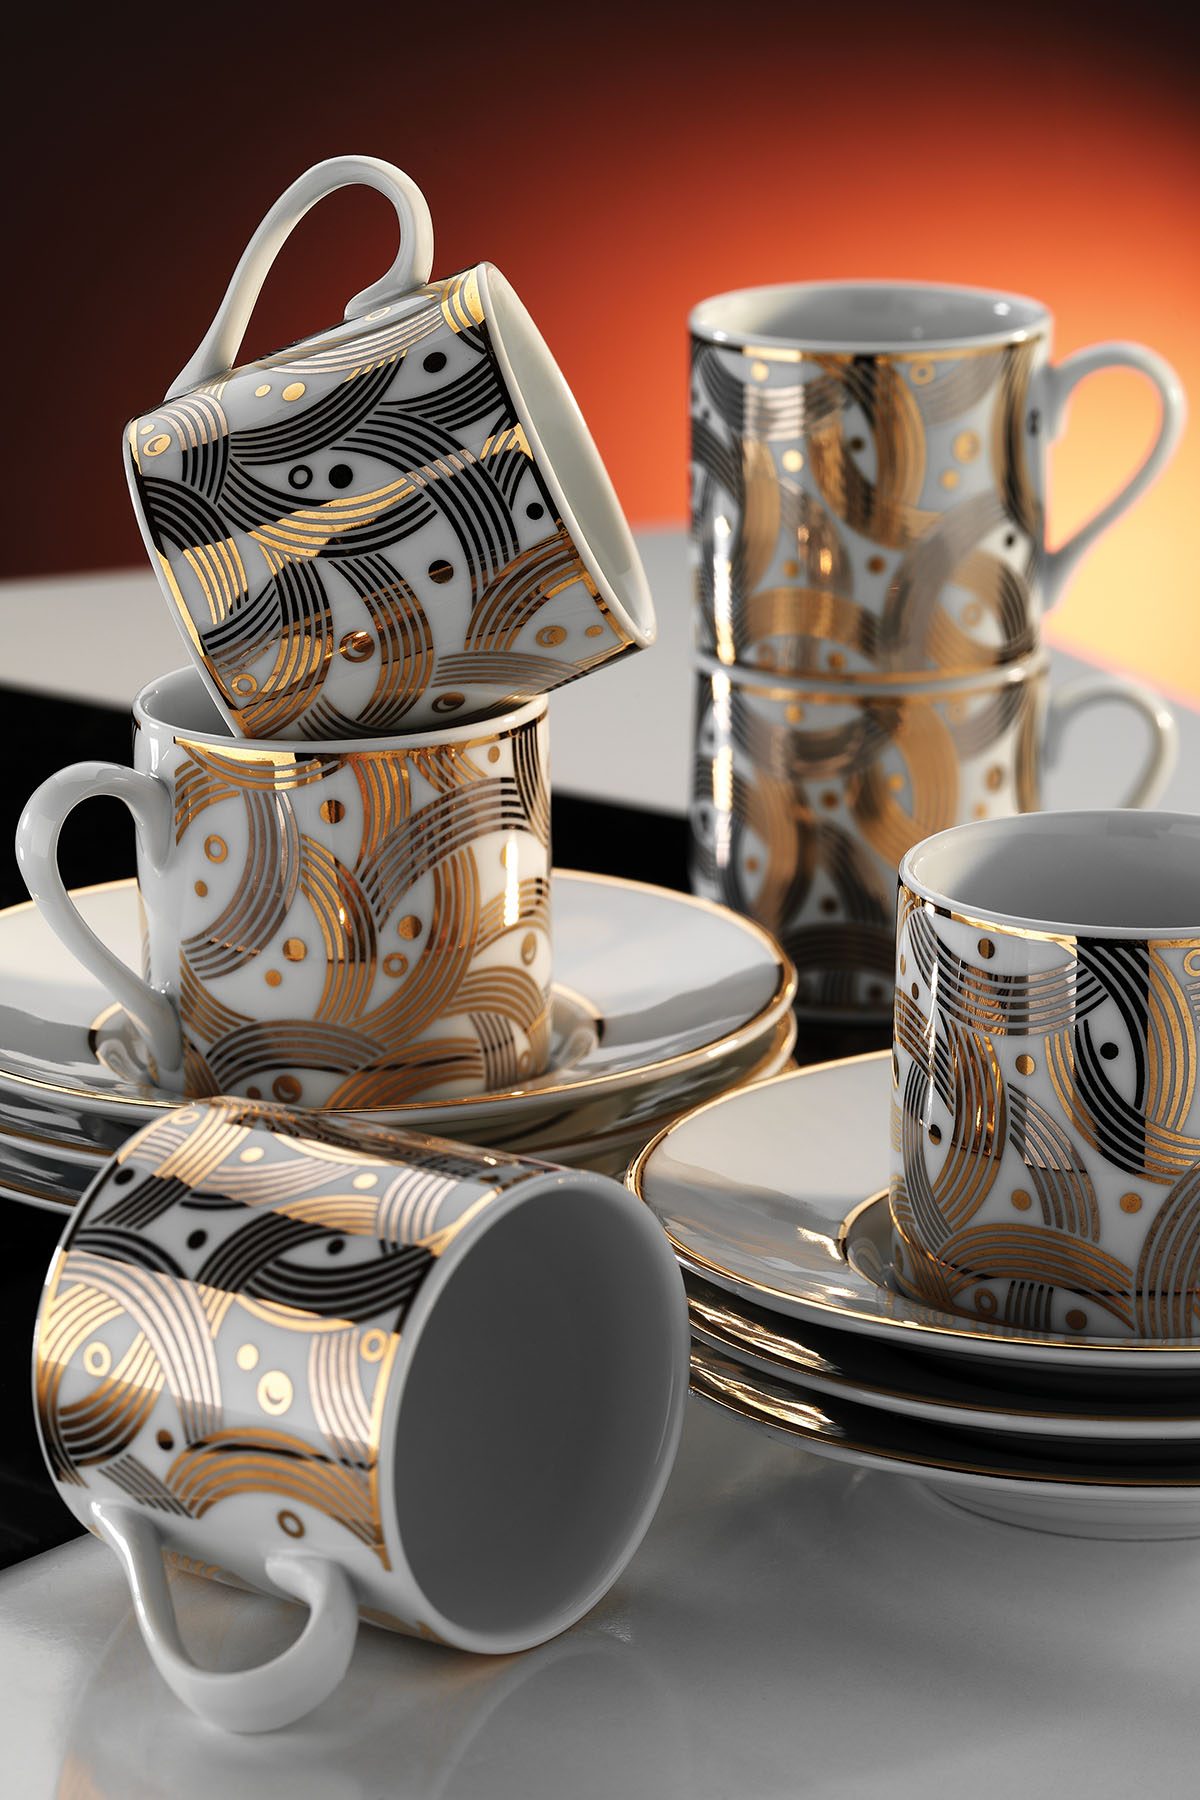 Kütahya Porselen Rüya 12 Parça 6 Kişilik Kahve Fincan Takımı 7055 - 1